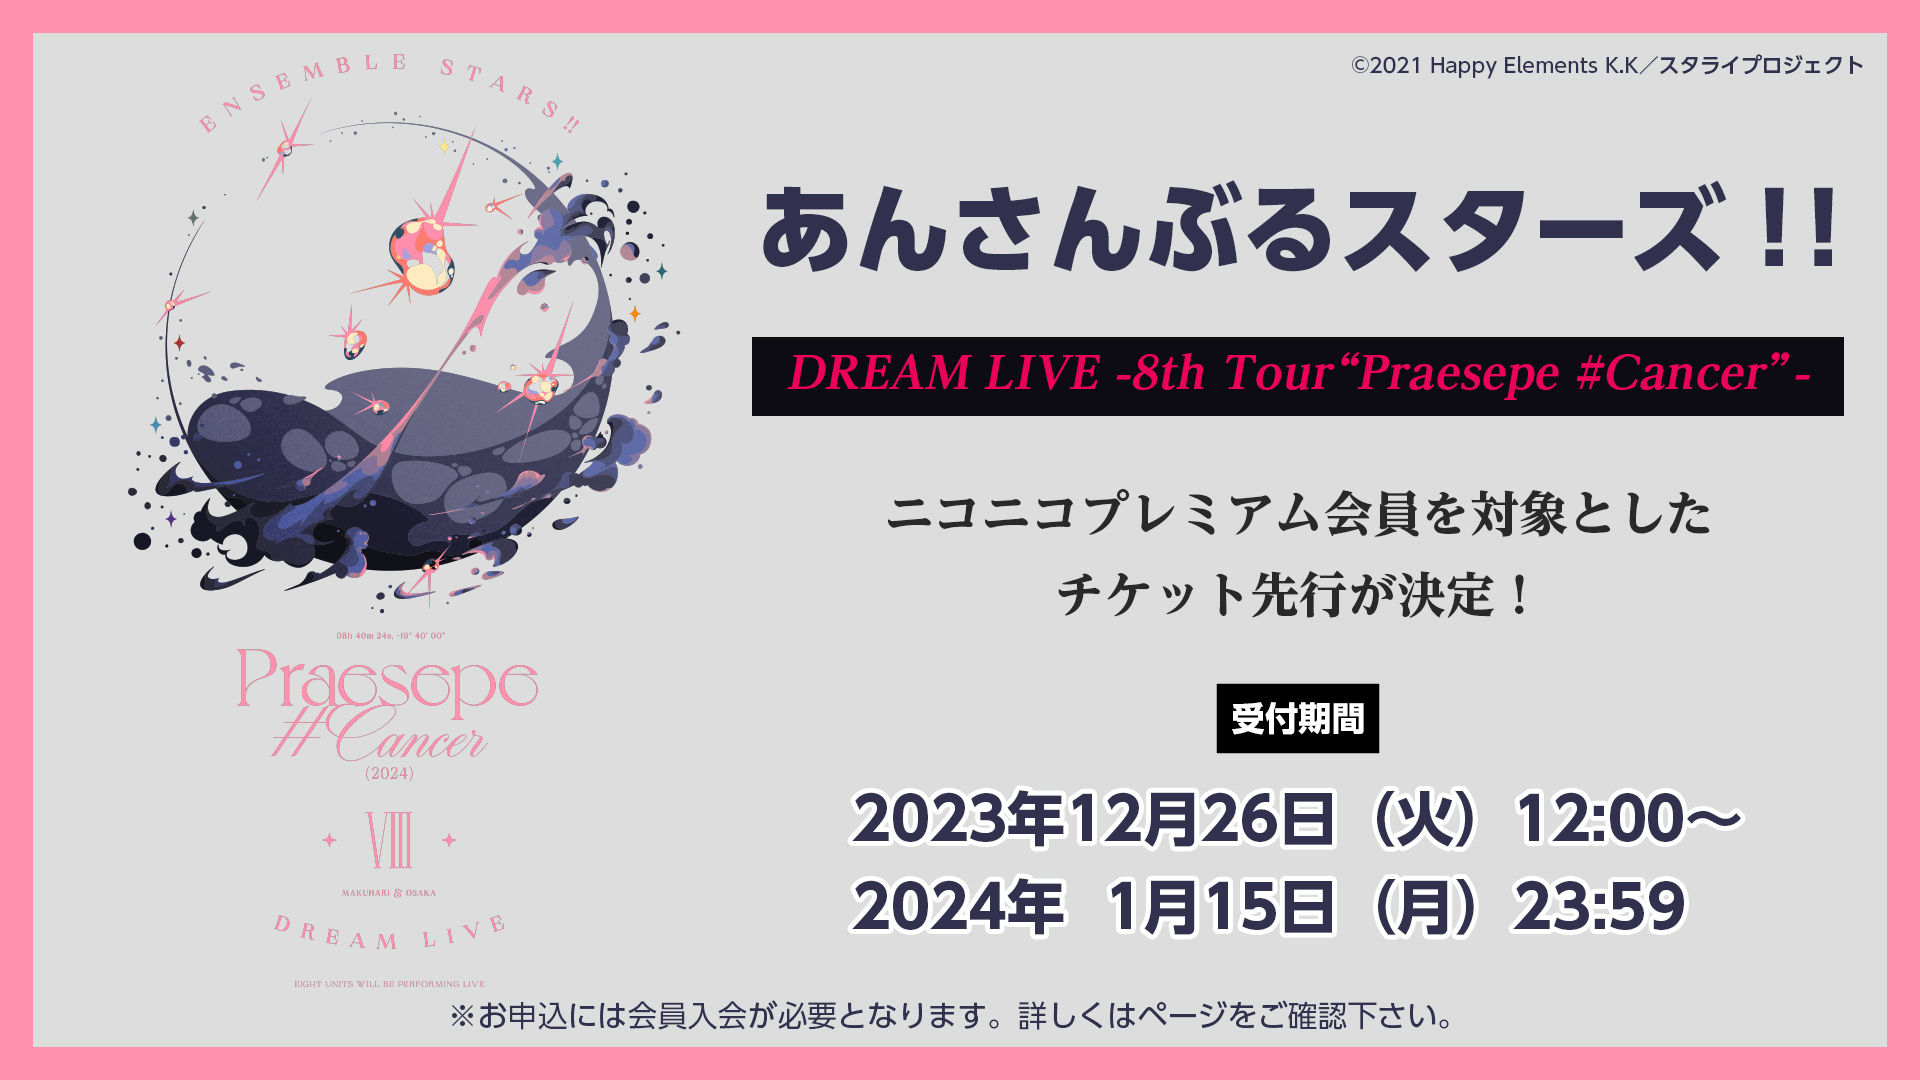 あんさんぶるスターズ！！DREAM LIVE -8th Tour Praesepe #Cancer- チケット先行申込 | ニコニコ